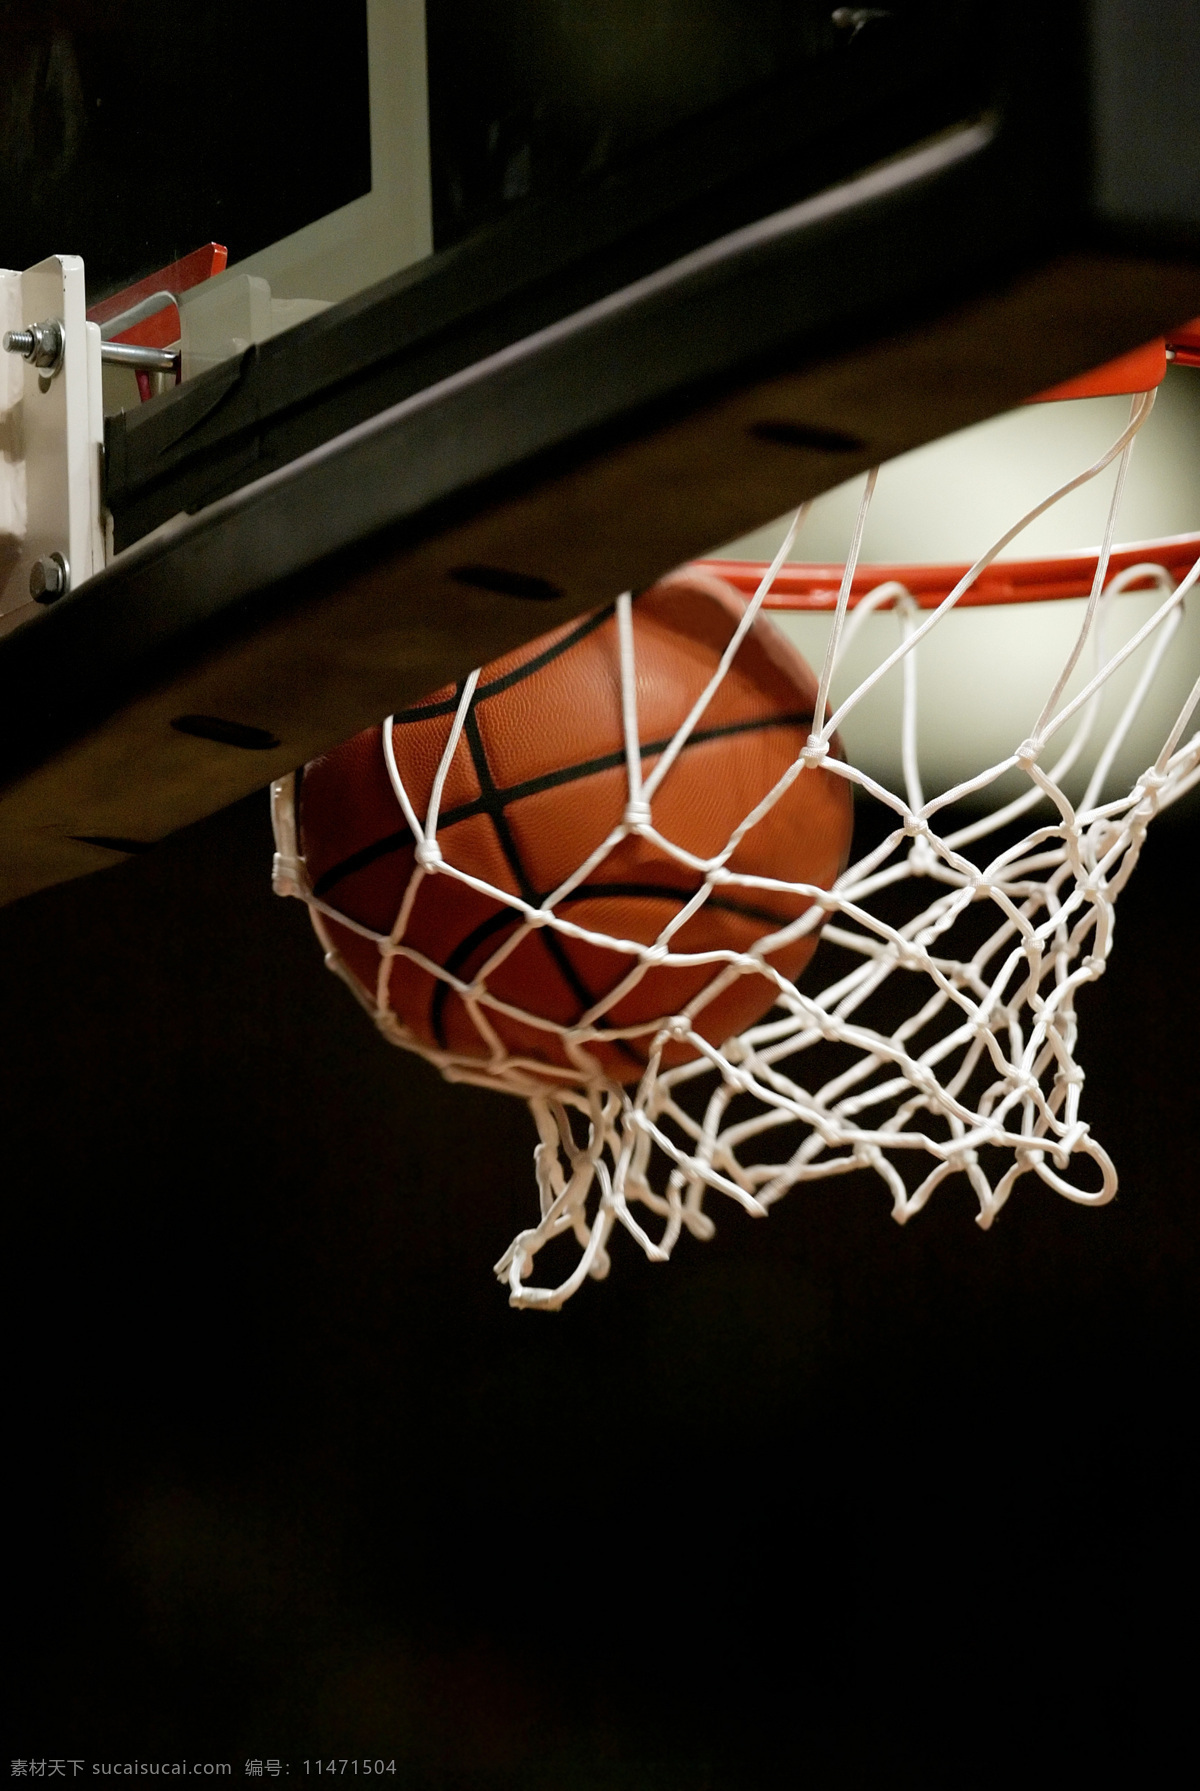 篮 框 中 篮球 篮框 球网 篮球架 特写 体育运动 高清图片 生活百科